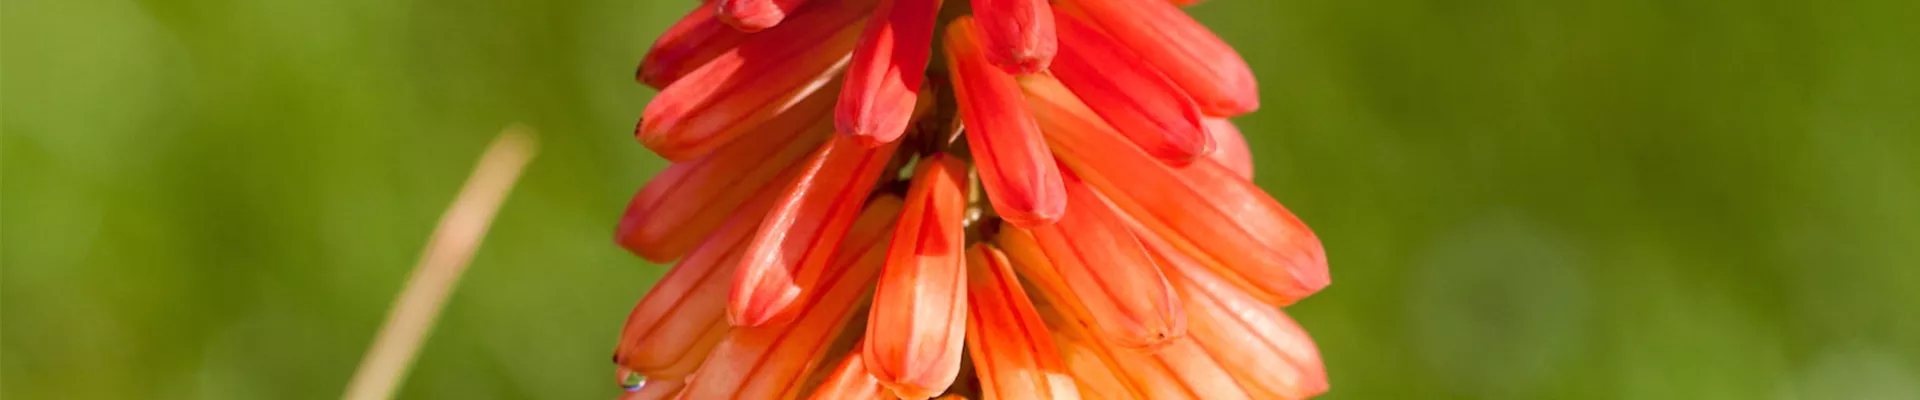 Fackellilie - Einpflanzen im Garten (thumbnail)